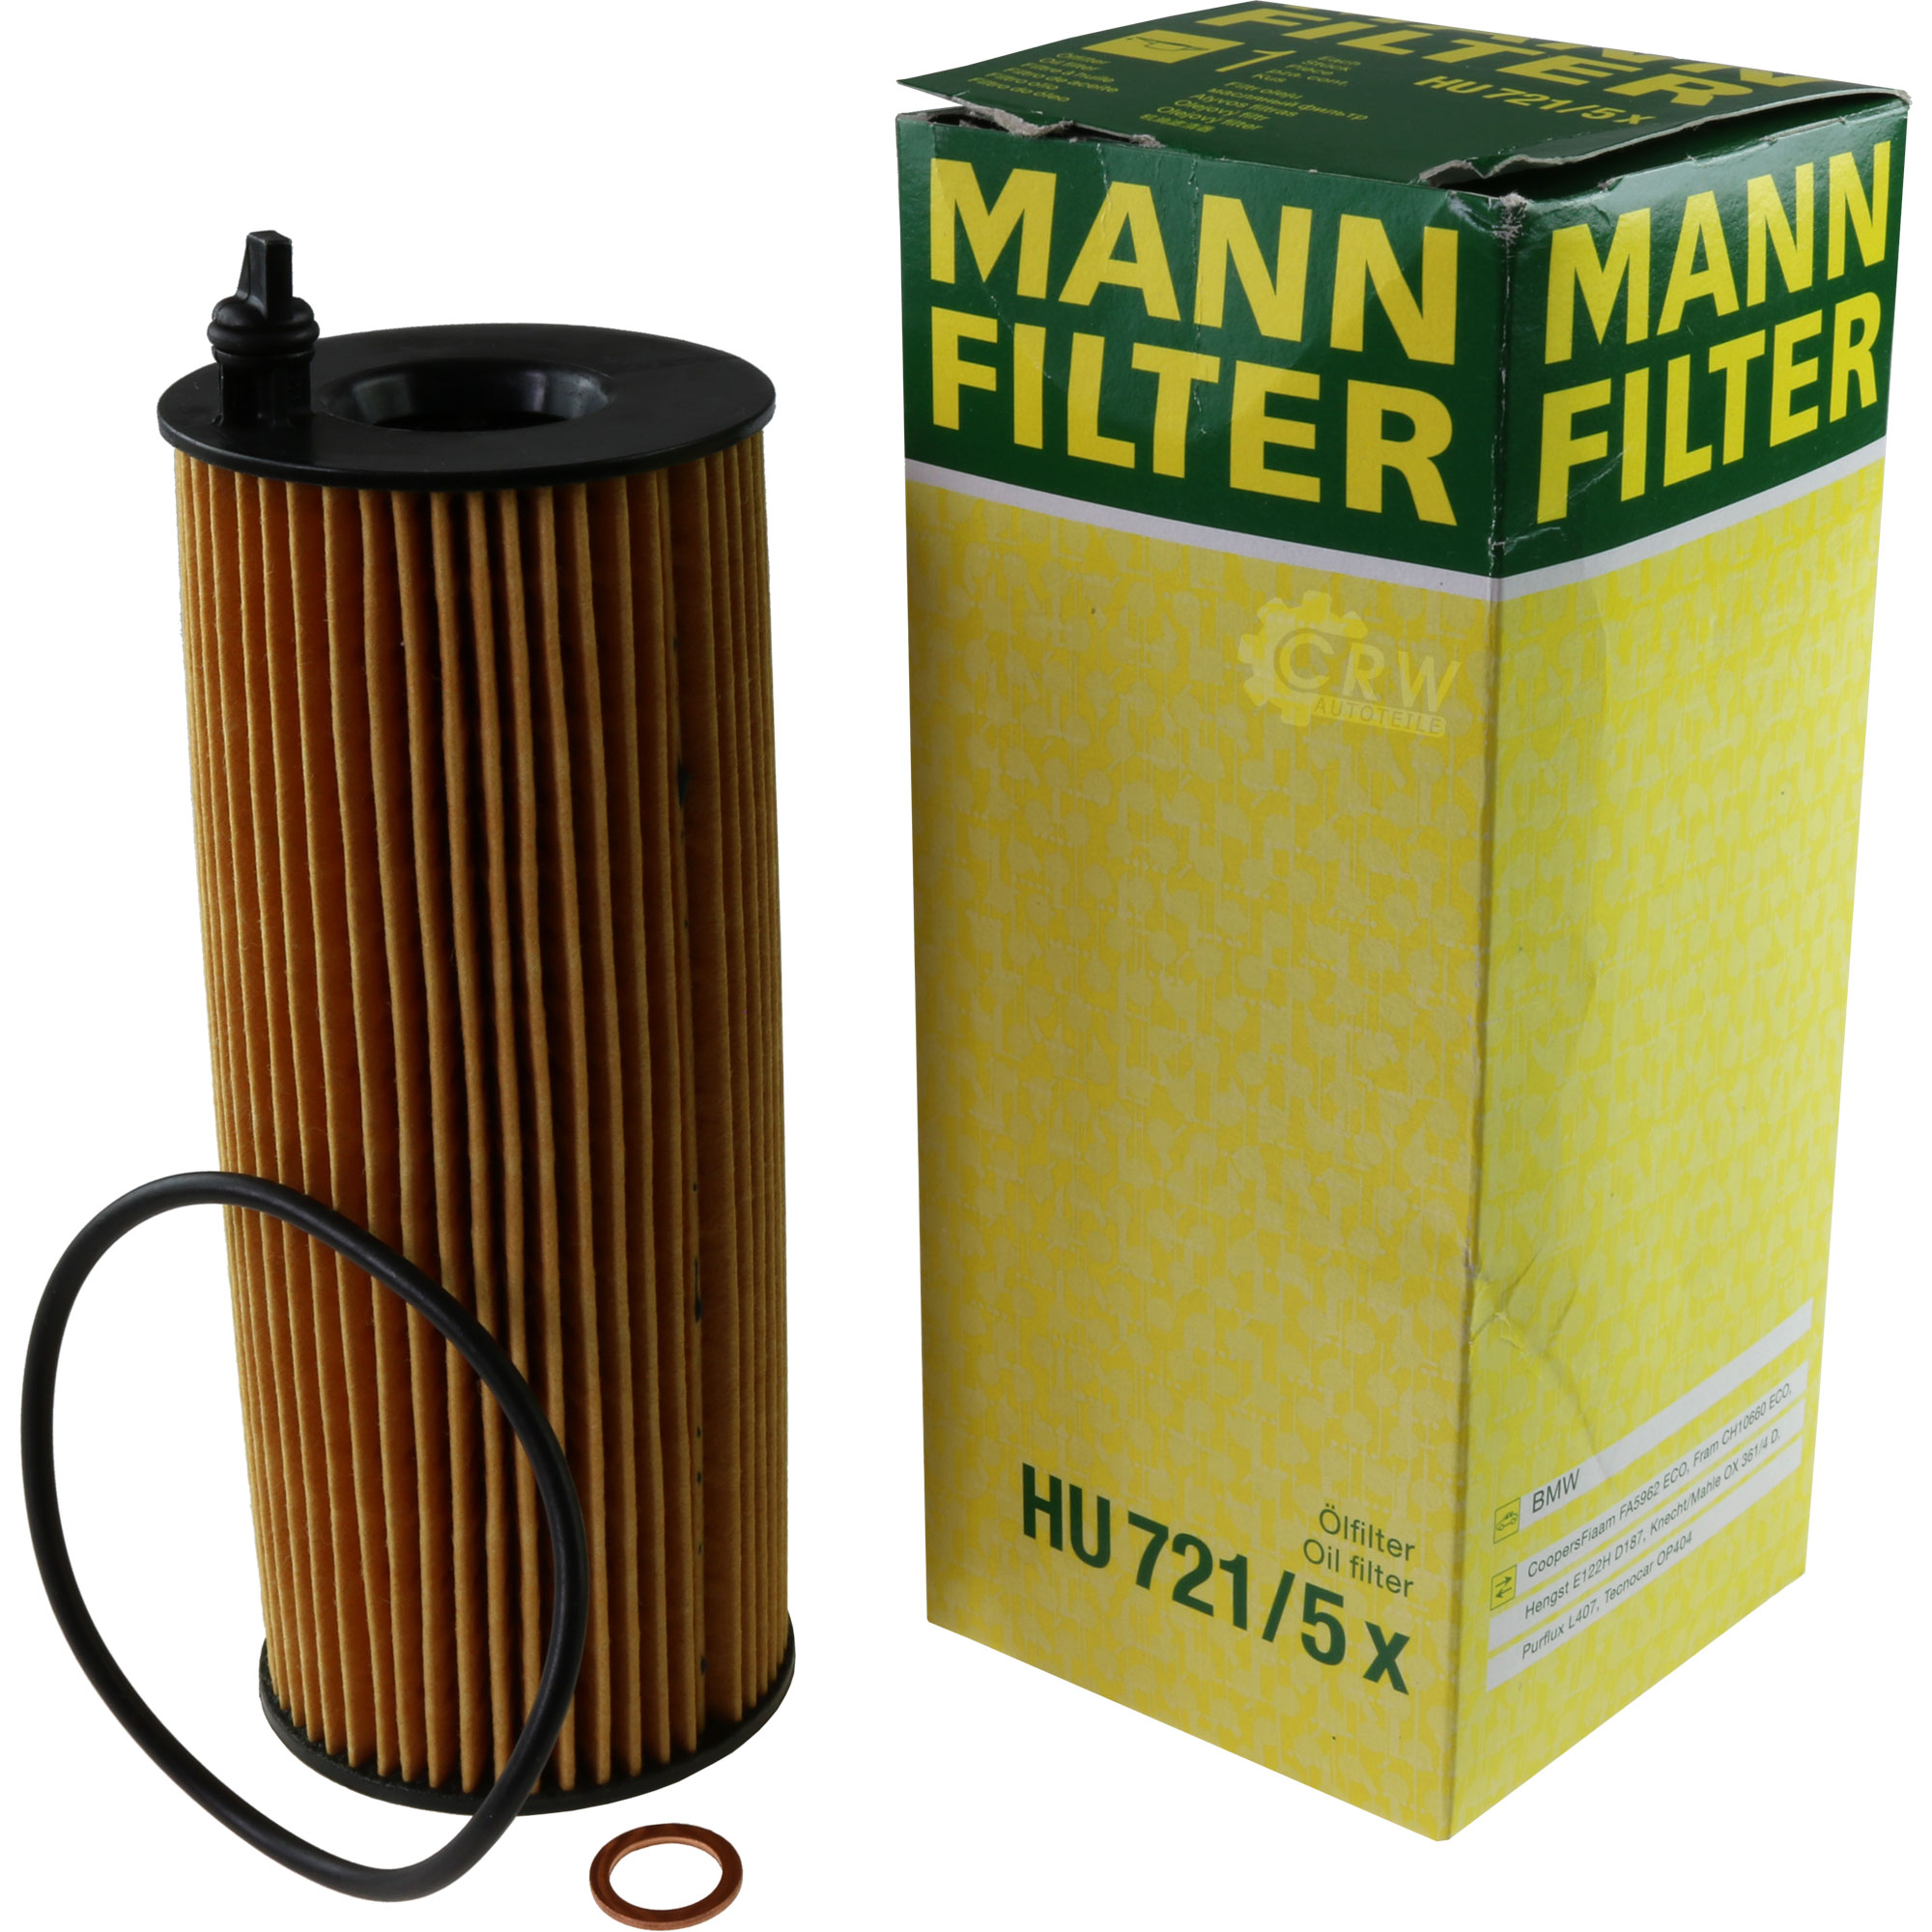 MANN-FILTER Ölfilter HU 721/5 x Oil Filter